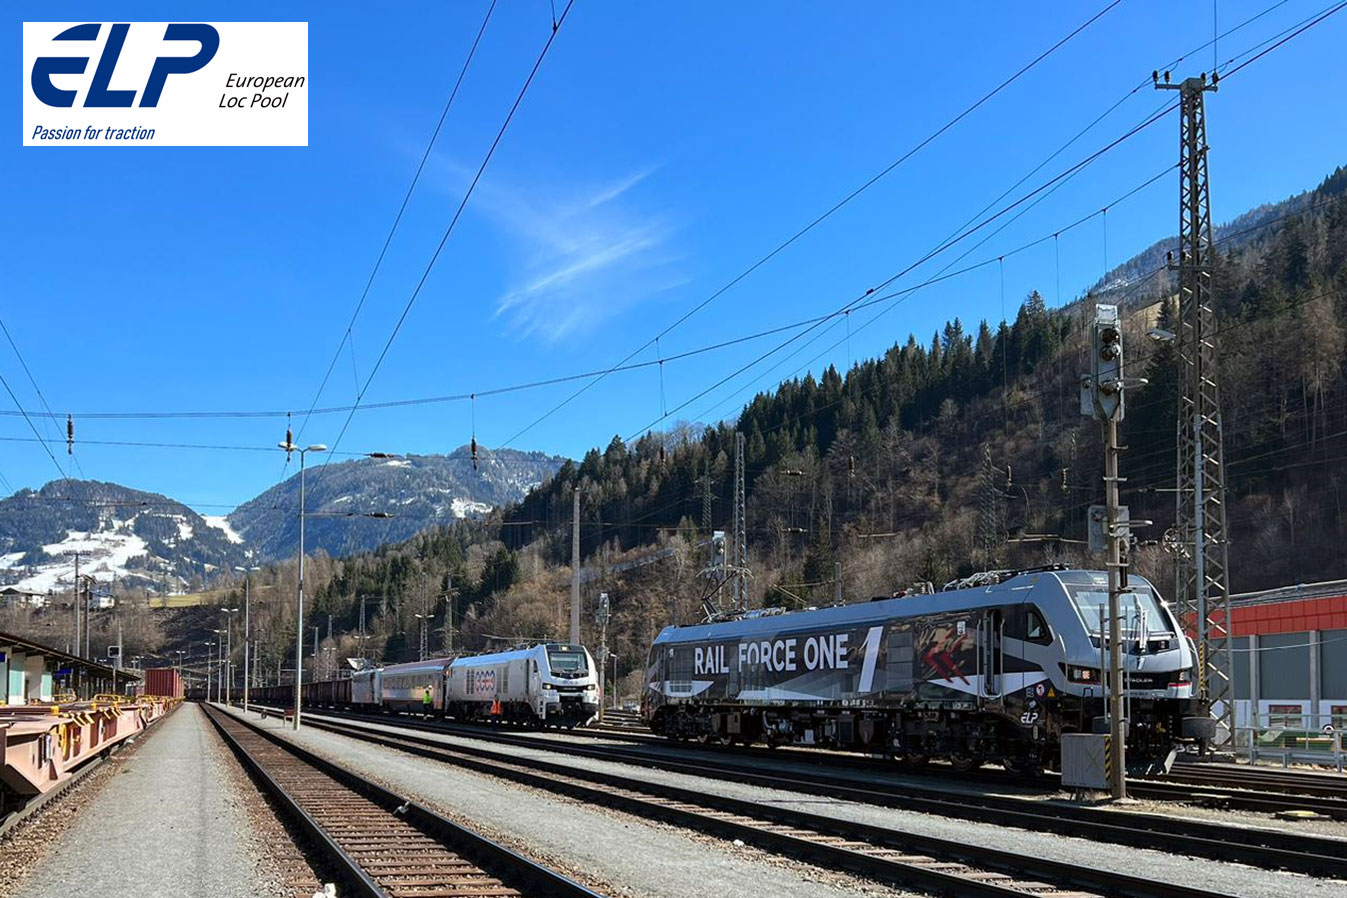 Testfahrten-Oesterreich_Rail Force One EURO9000 2019 302_ELP_3 23